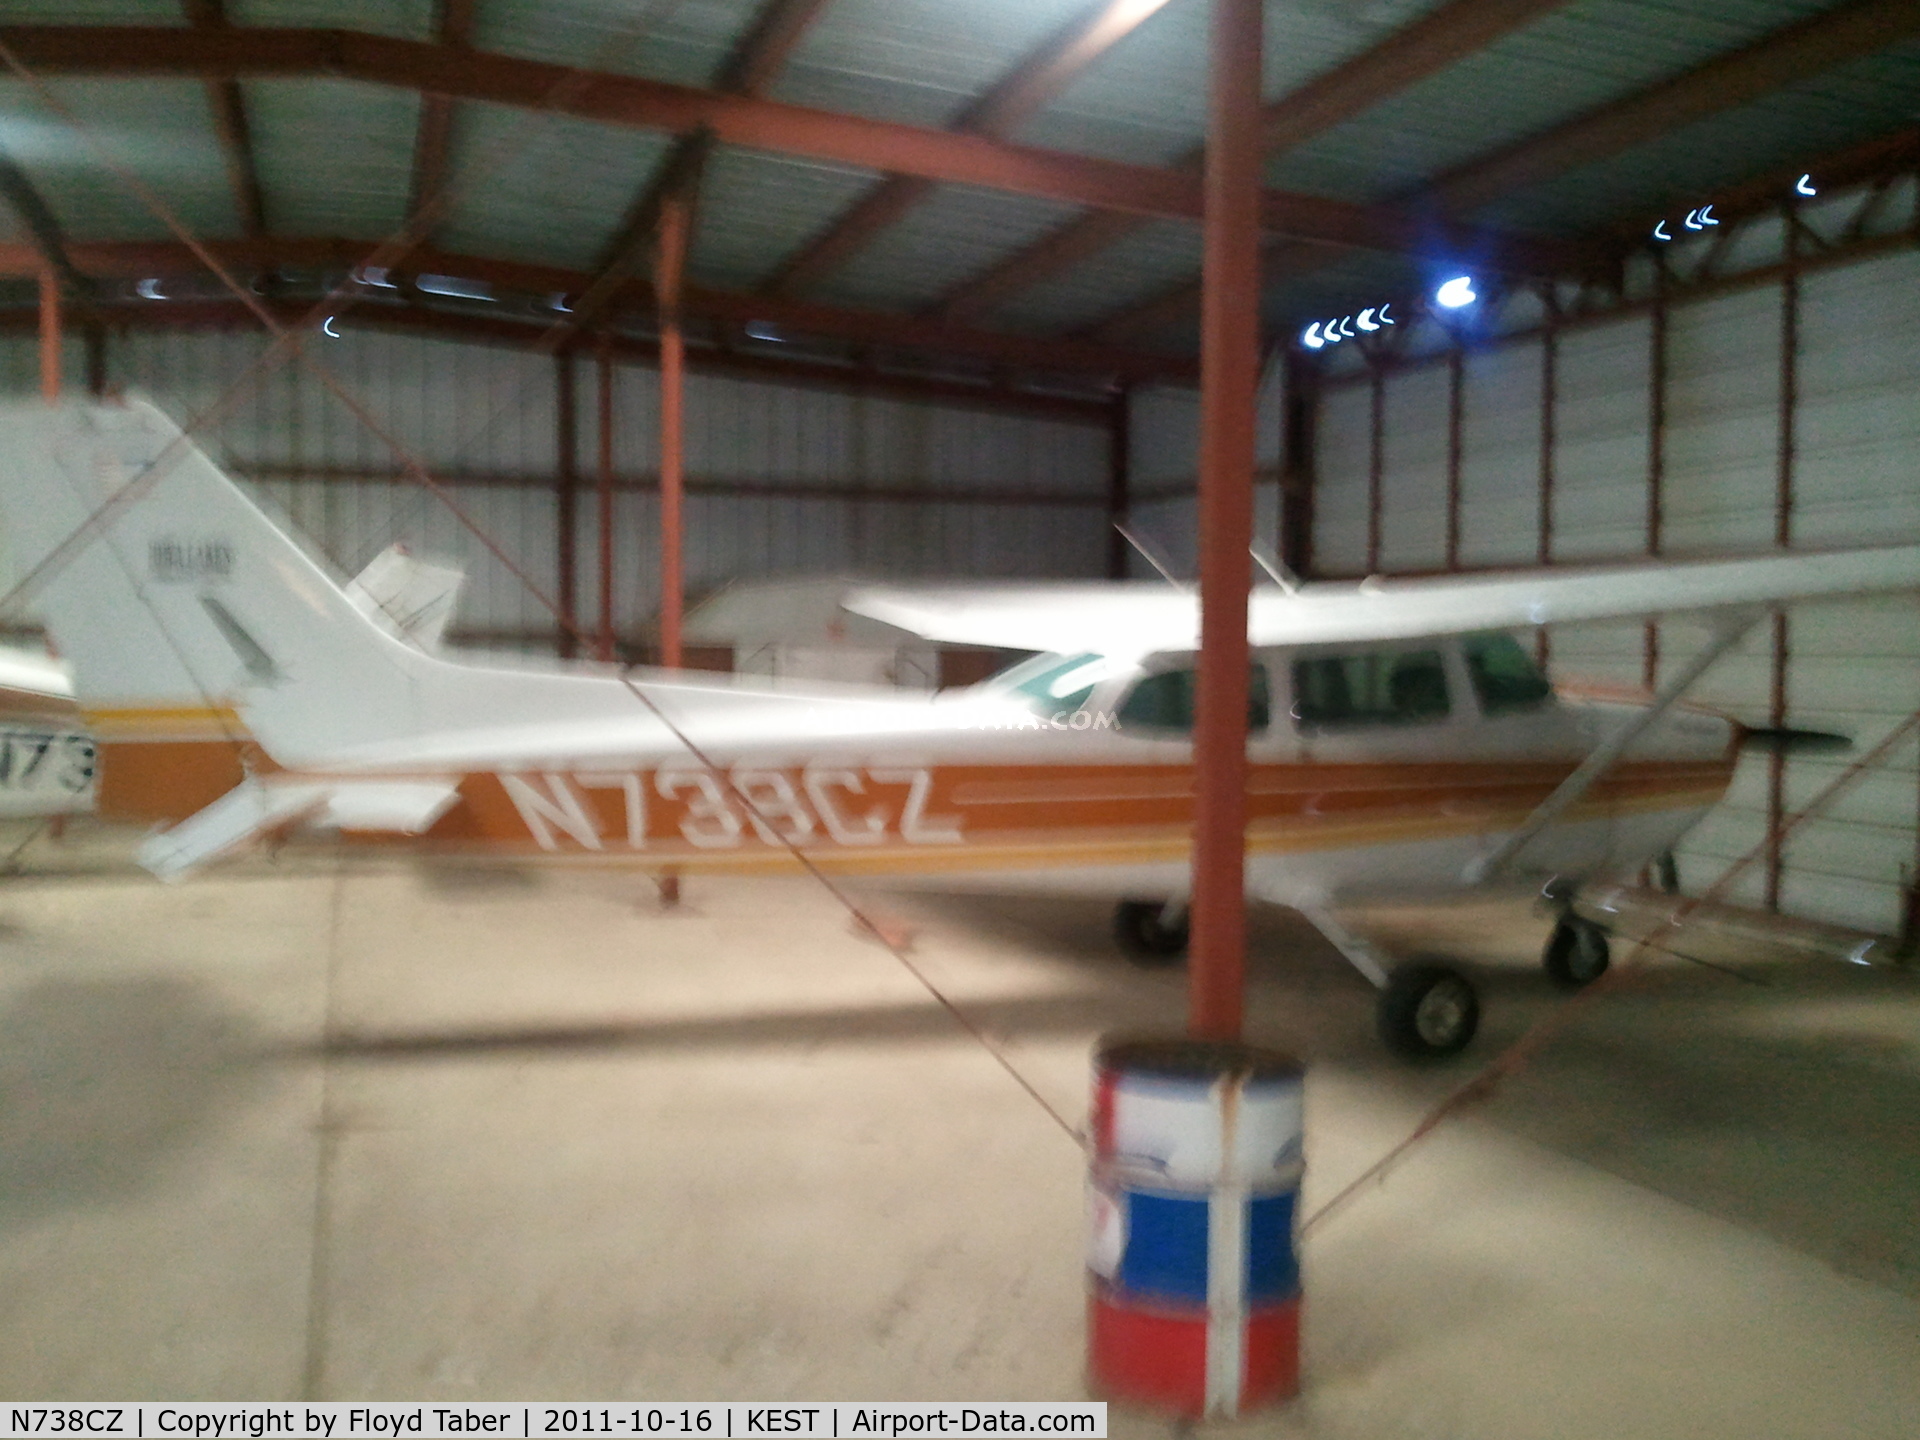 N738CZ, 1977 Cessna 172N C/N 17269884, in the hangar